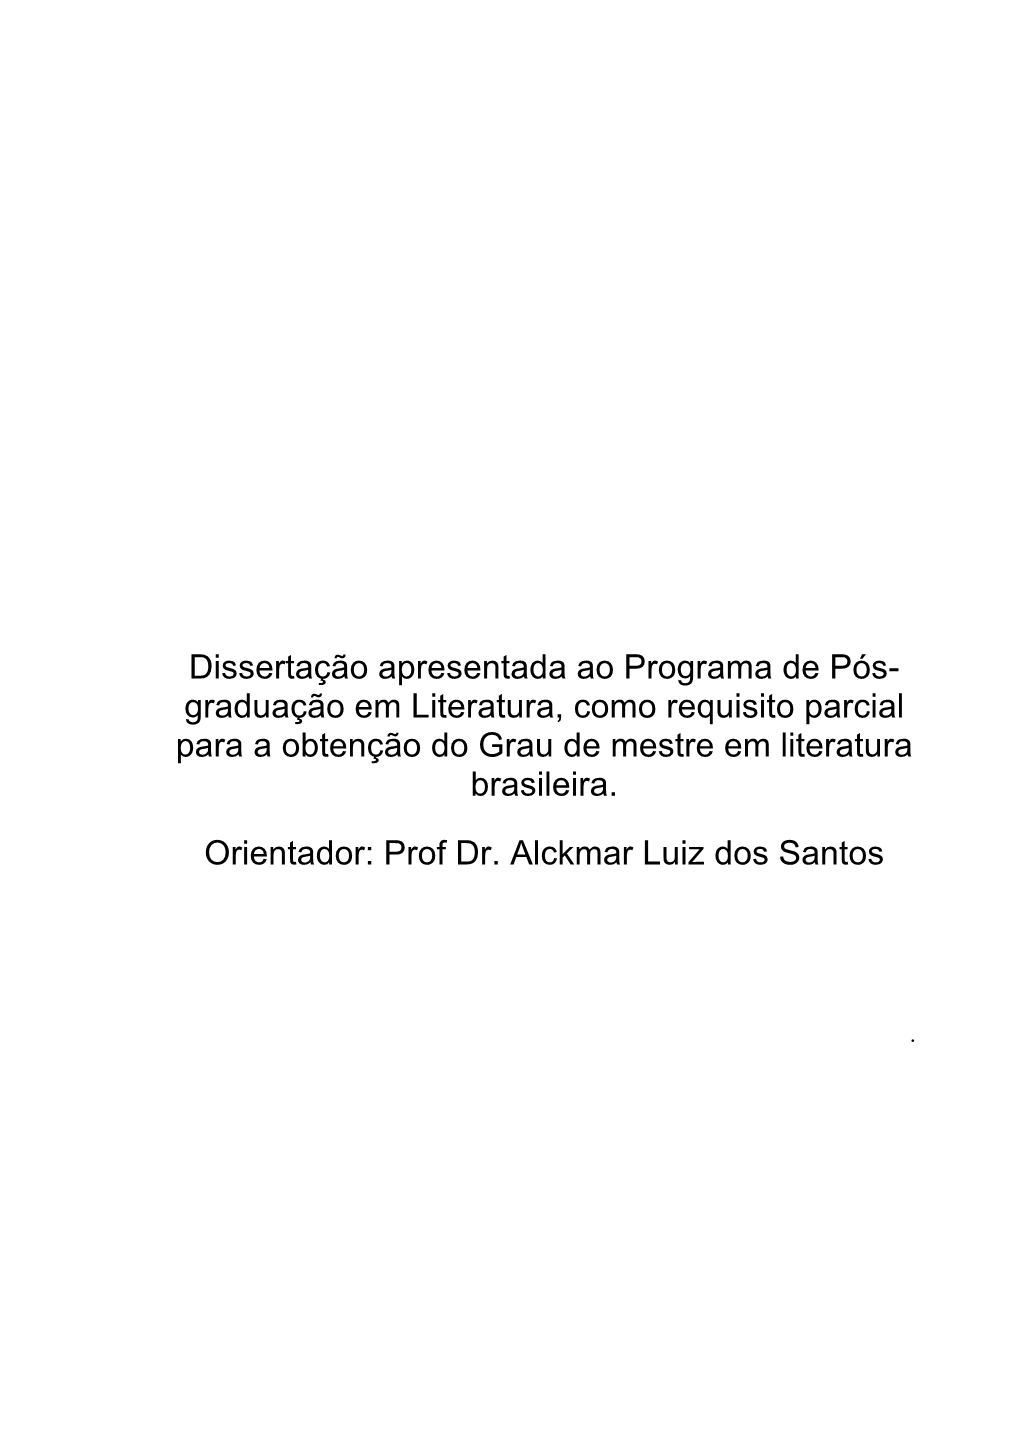 Graduação Em Literatura, Como Requisito Parcial Para a Obtenção Do Grau De Mestre Em Literatura Brasileira